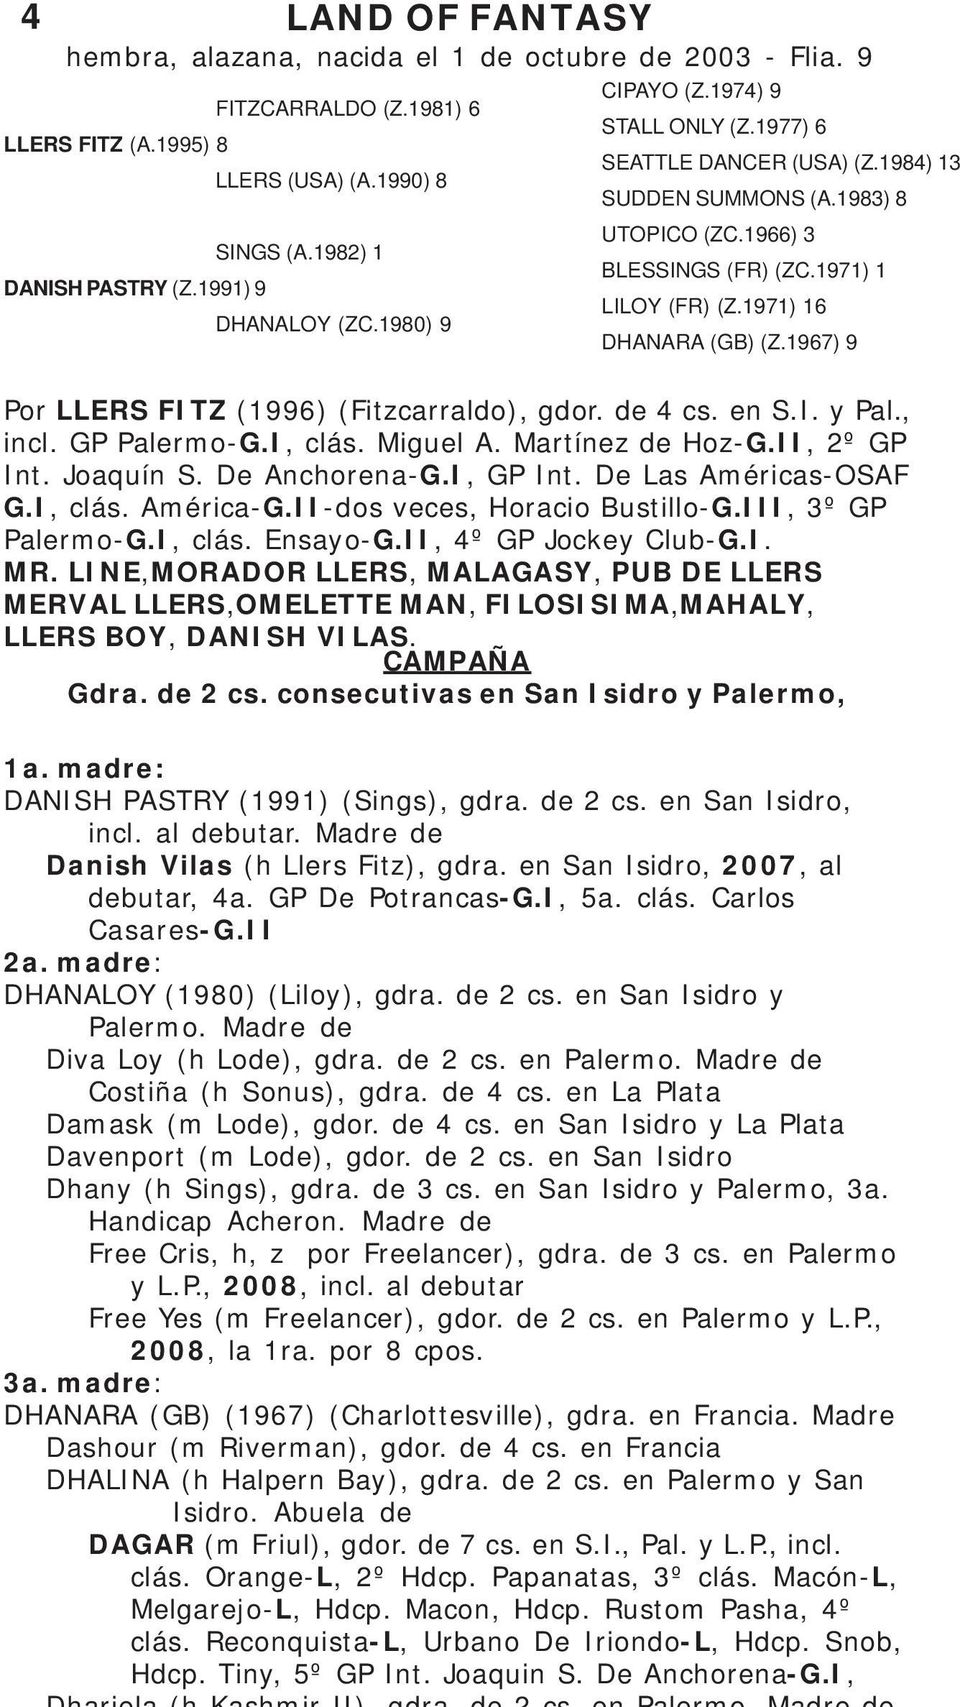 1971) 16 DHANARA (GB) (Z.1967) 9 Por LLERS FITZ (1996) (Fitzcarraldo), gdor. de 4 cs. en S.I. y Pal., incl. GP Palermo-G.I, clás. Miguel A. Martínez de Hoz-G.II, 2º GP Int. Joaquín S. De Anchorena-G.